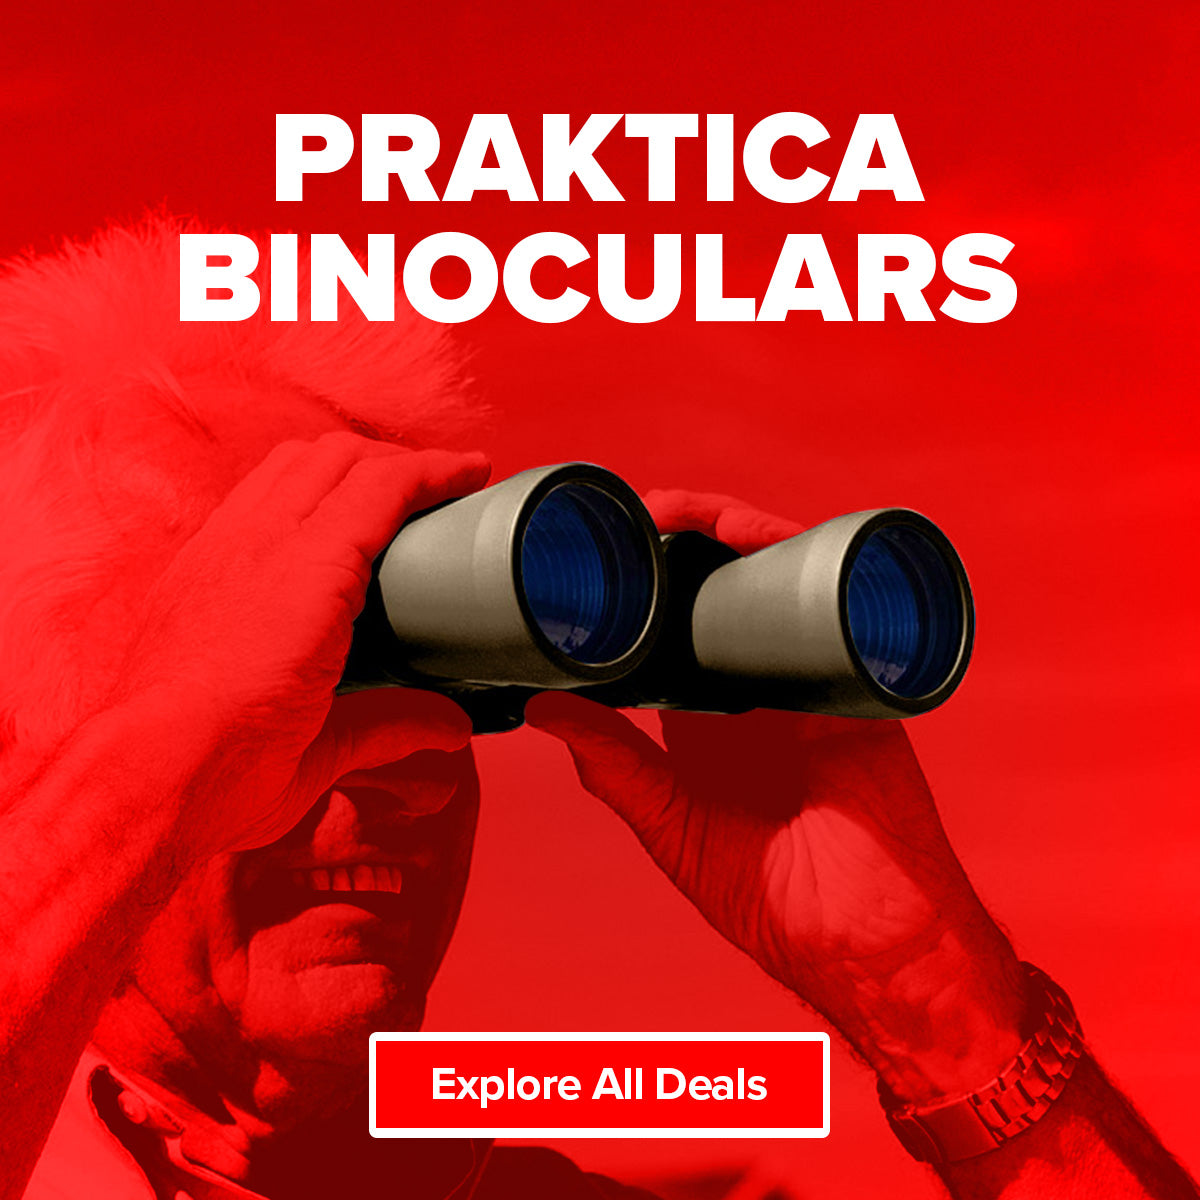 14% off Praktica binoculars in Maplin's Valentine's Day Sale!